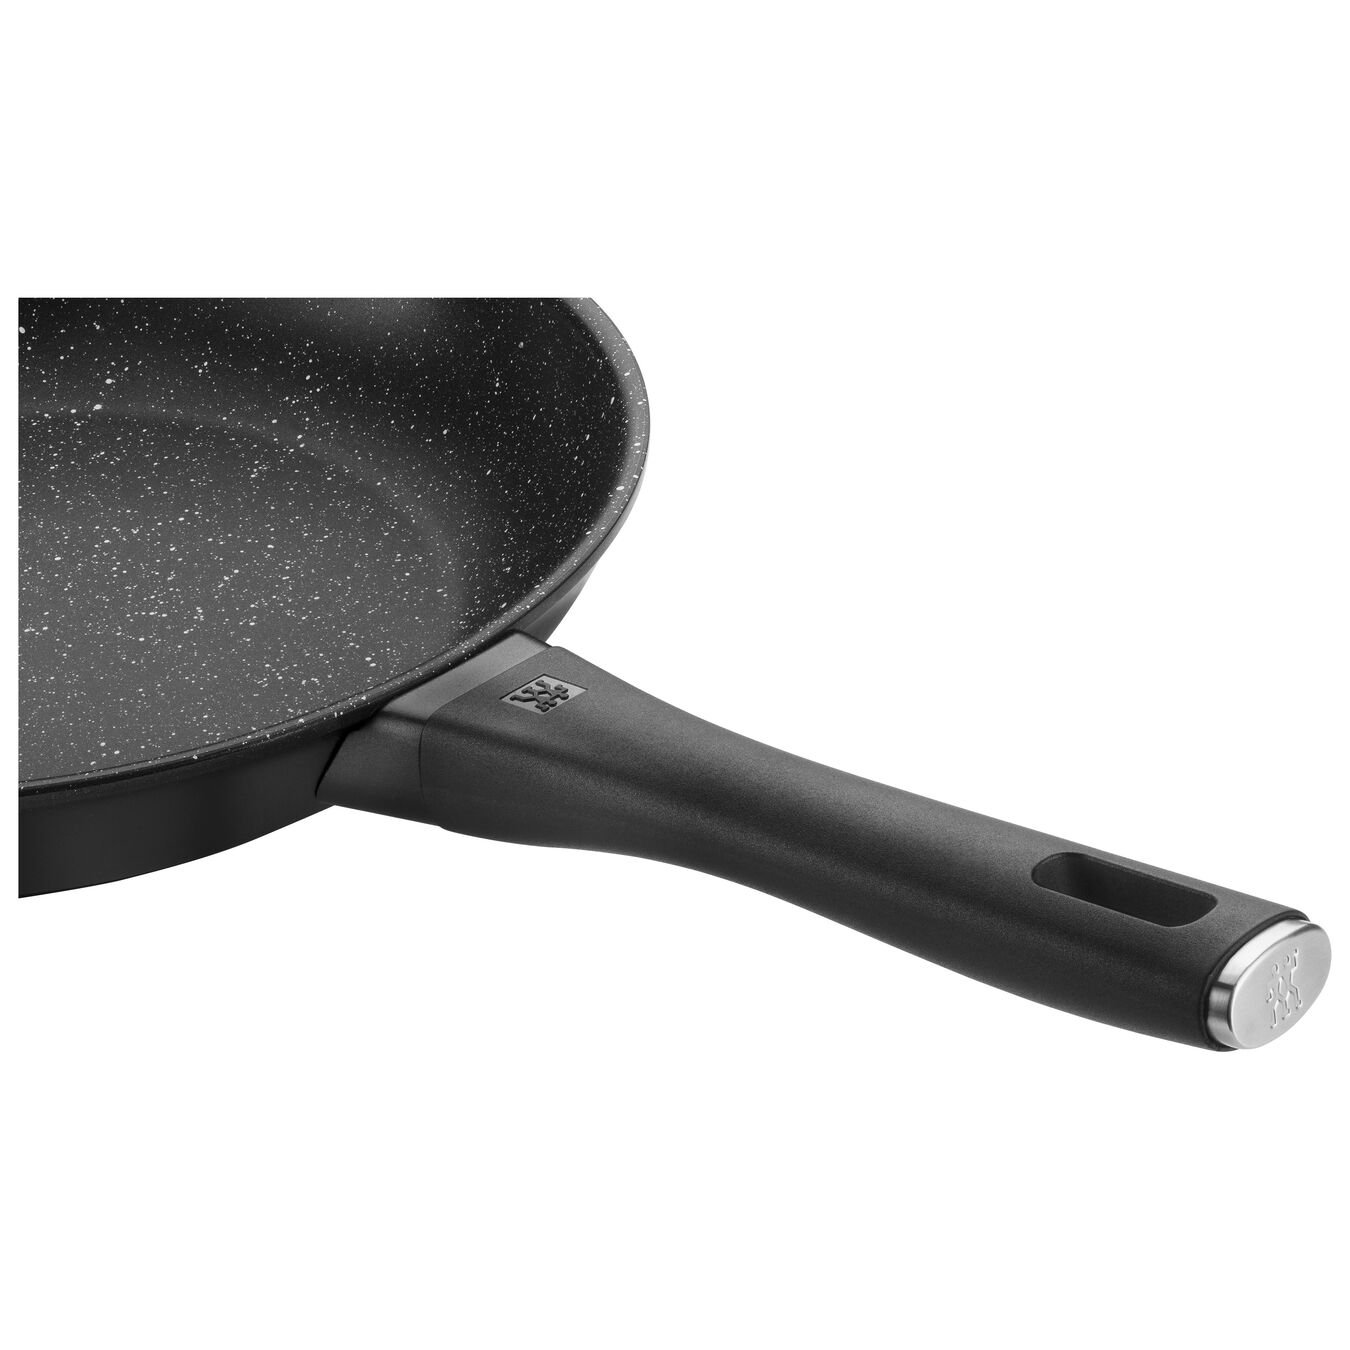 28 cm / 11 inch aluminium Frying pan,,large 6